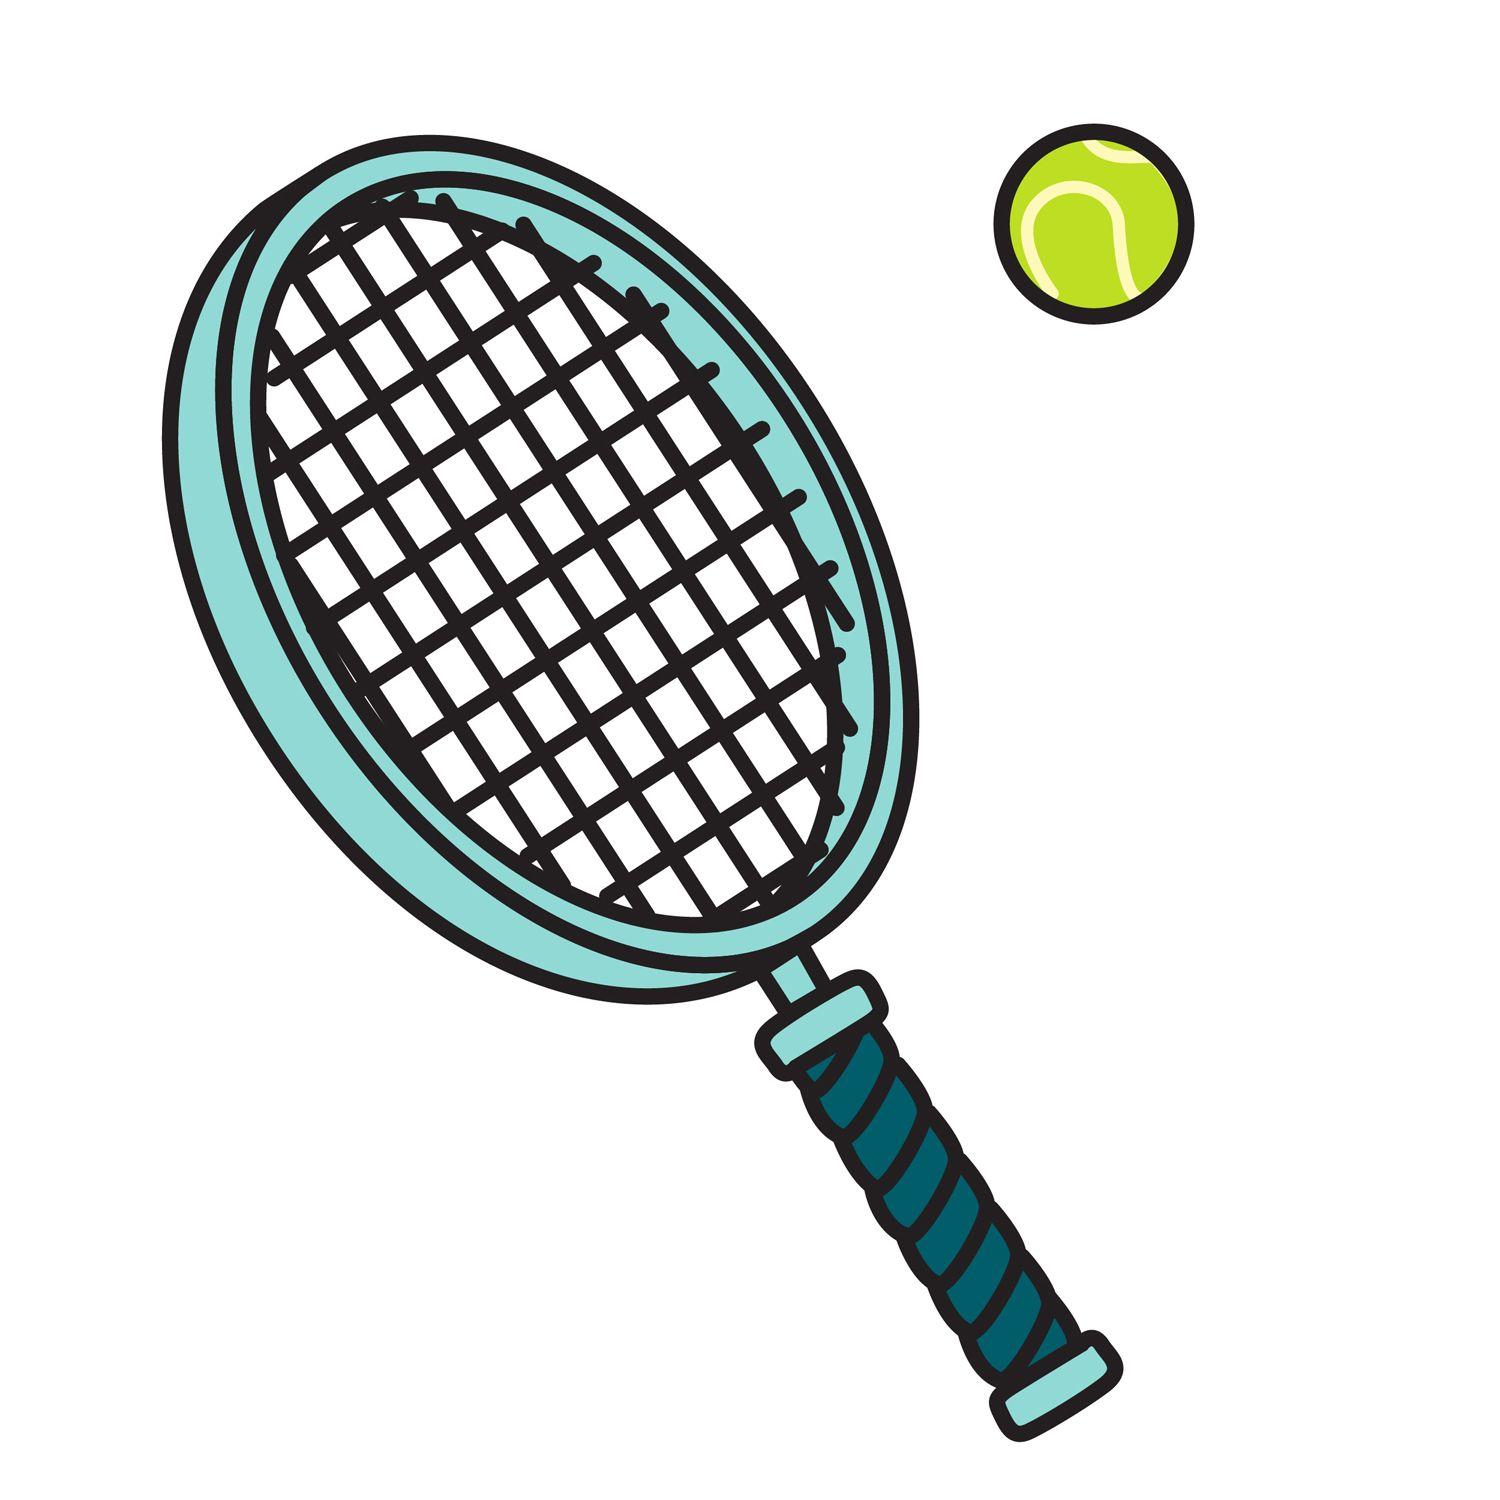 Blue and Green Tennis Racket Logo - Tennis Racket & Ball